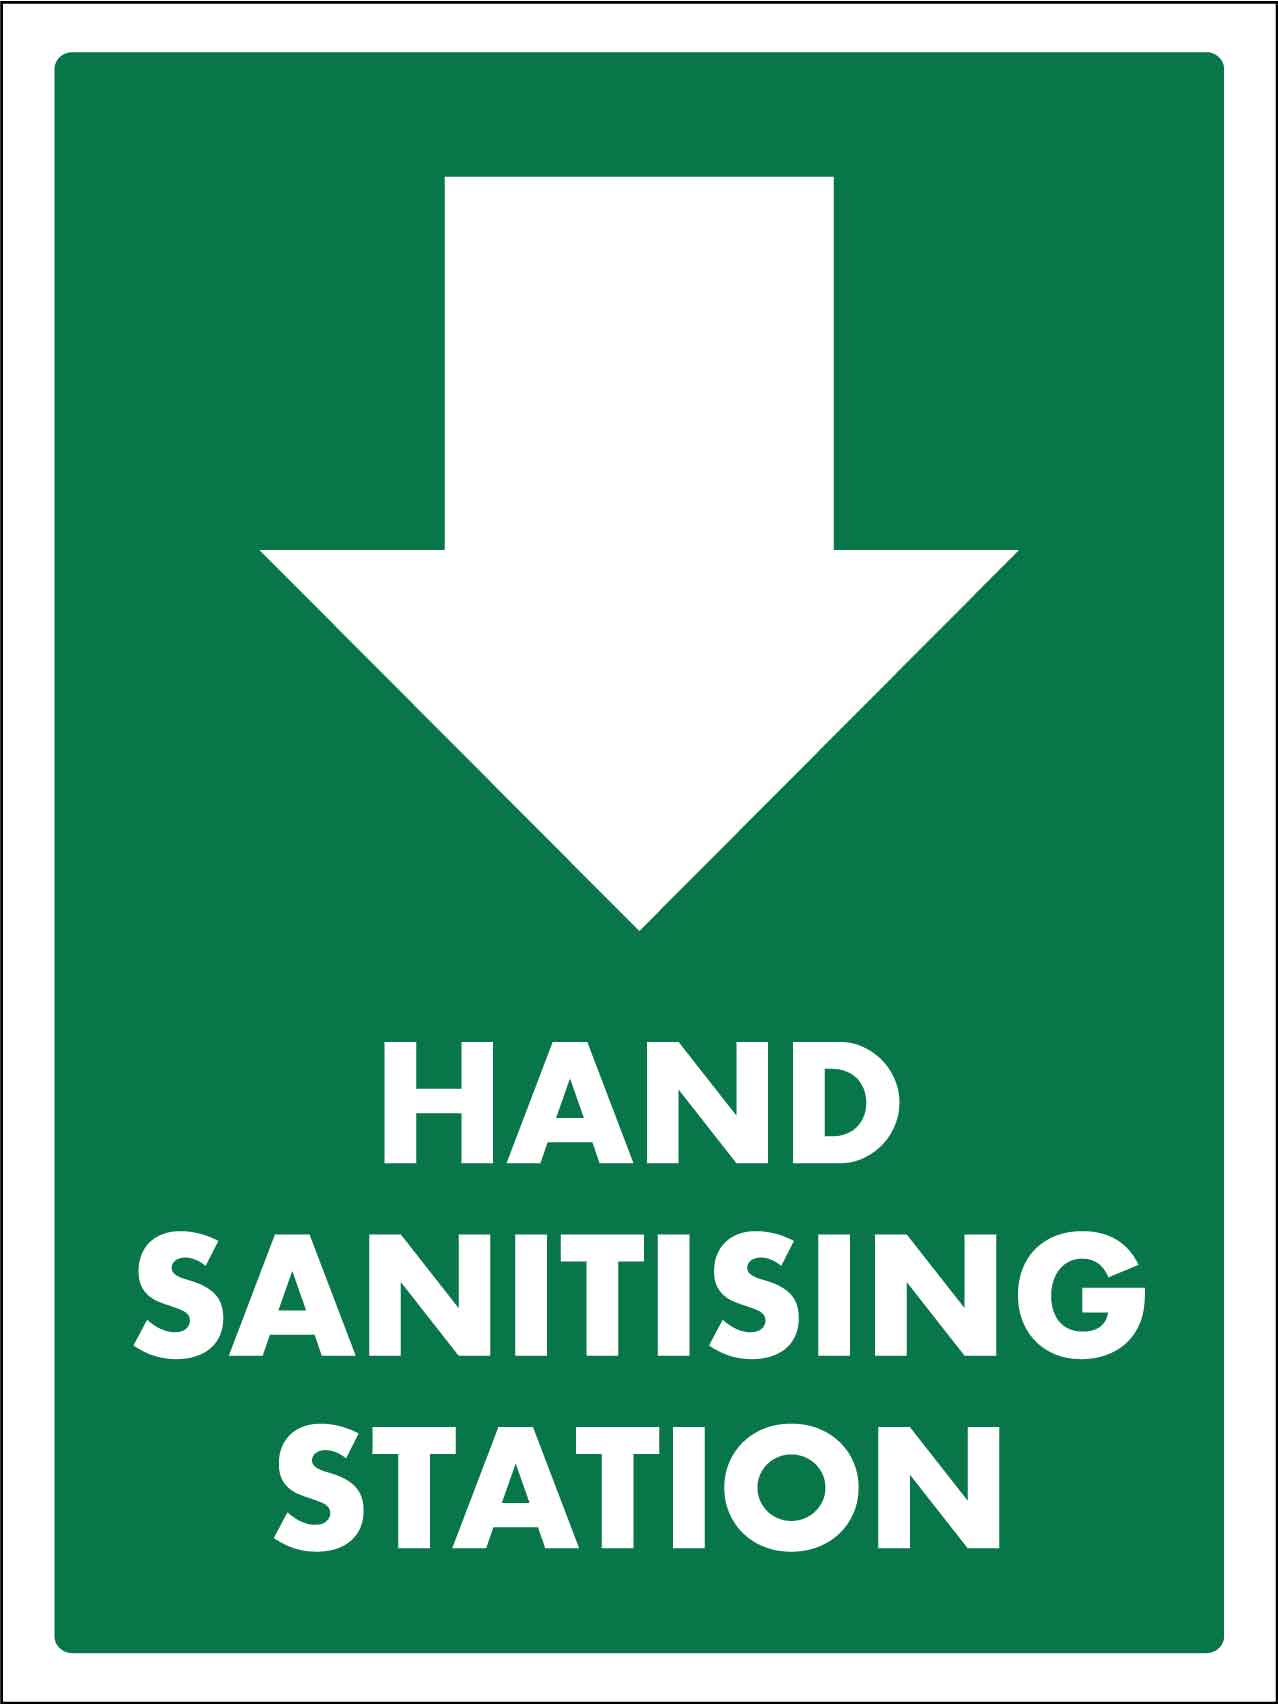 Hand Sanitising Station Sign